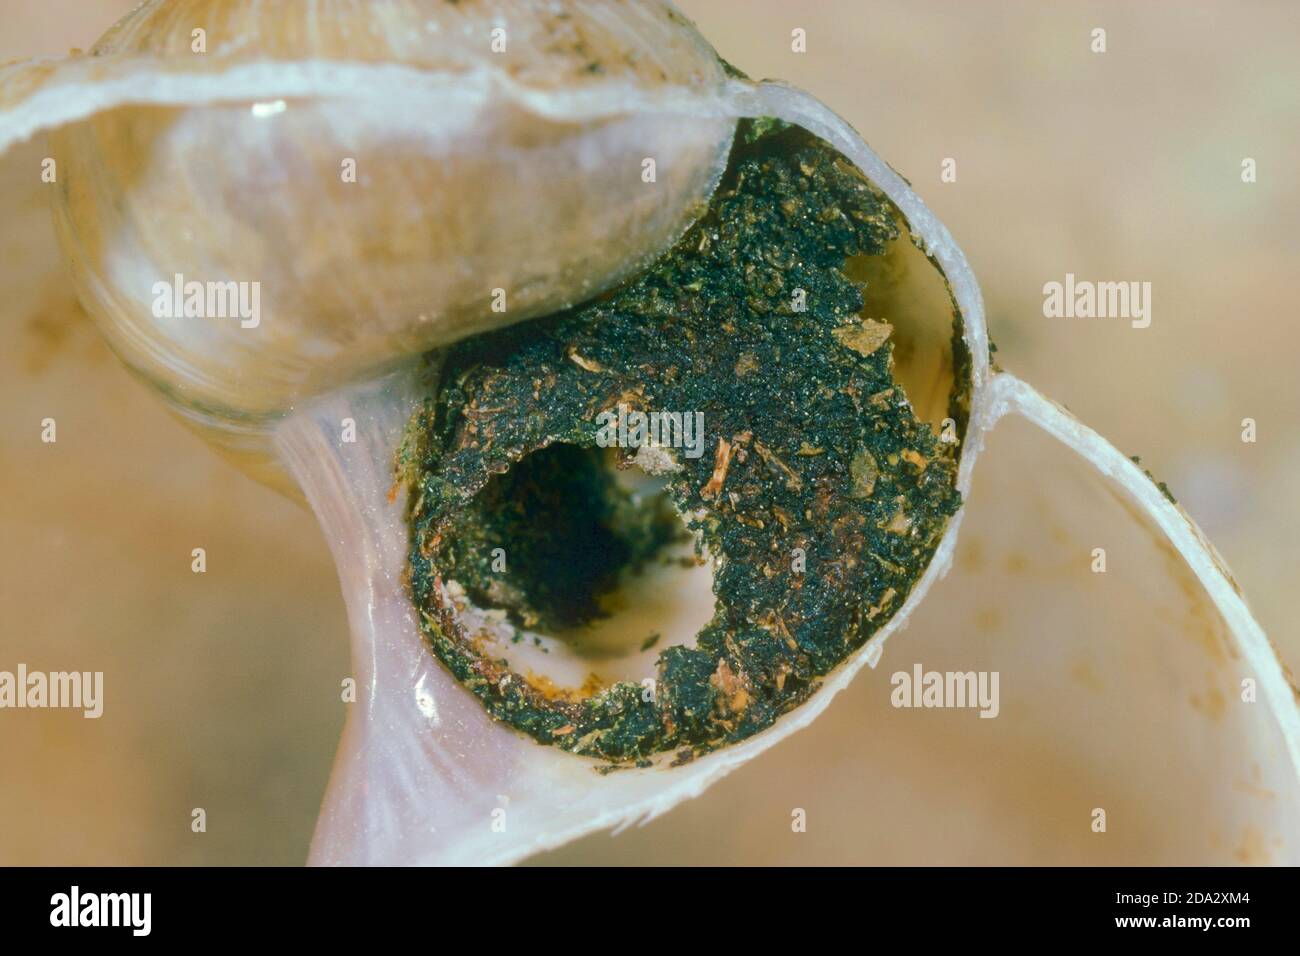 Gold-fringed Mason-bee (Osmia aurulenta, Helicosmia aurulenta), nest in a snail shell, Germany Stock Photo